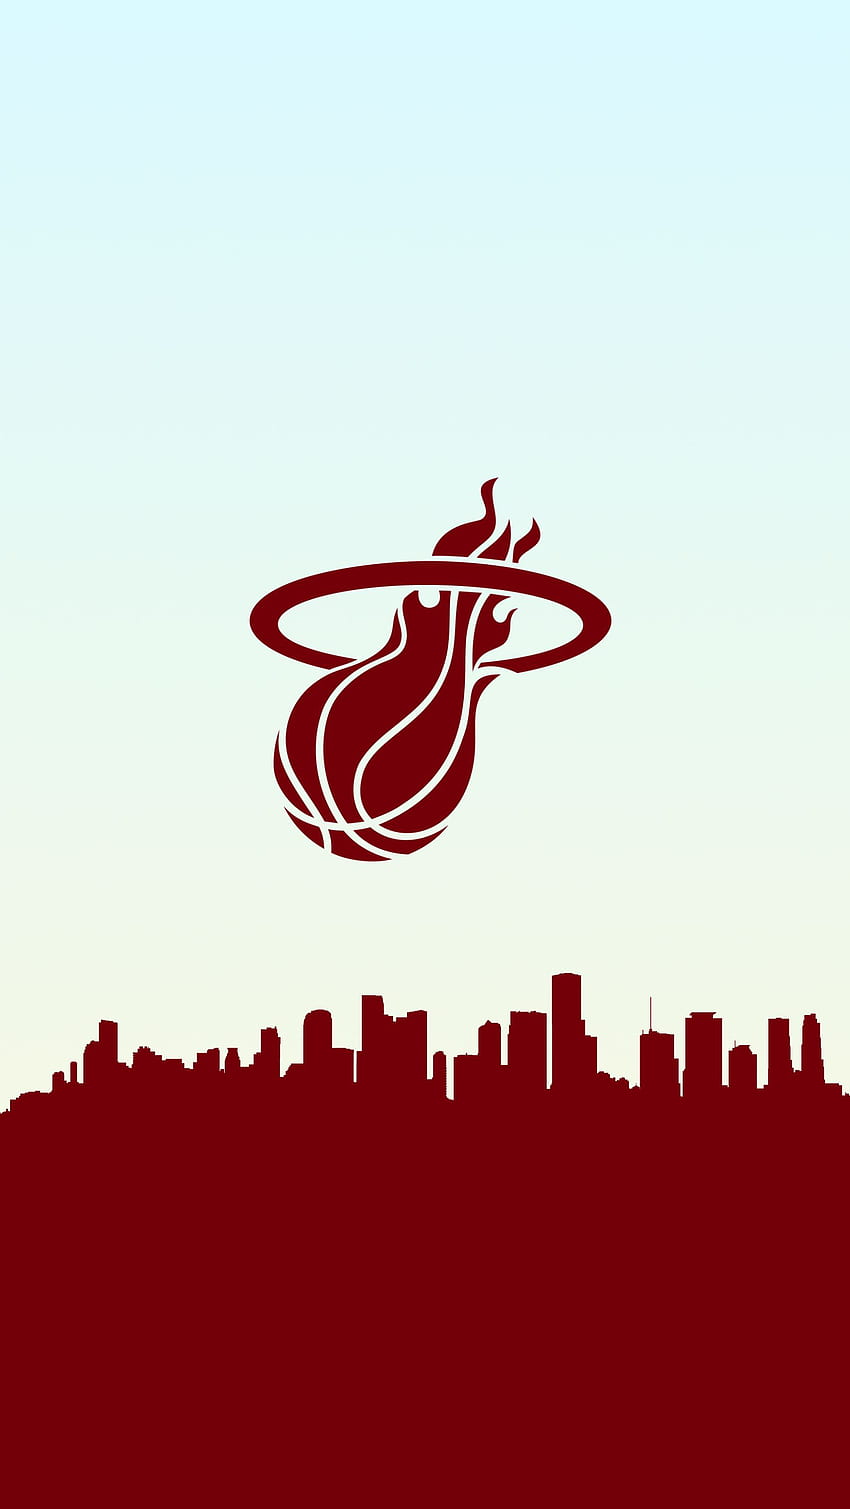 Miami Heat Basketball-Telefon-Hintergrund. Miami Heat Basketball, Miami Heat, Basketball HD-Handy-Hintergrundbild